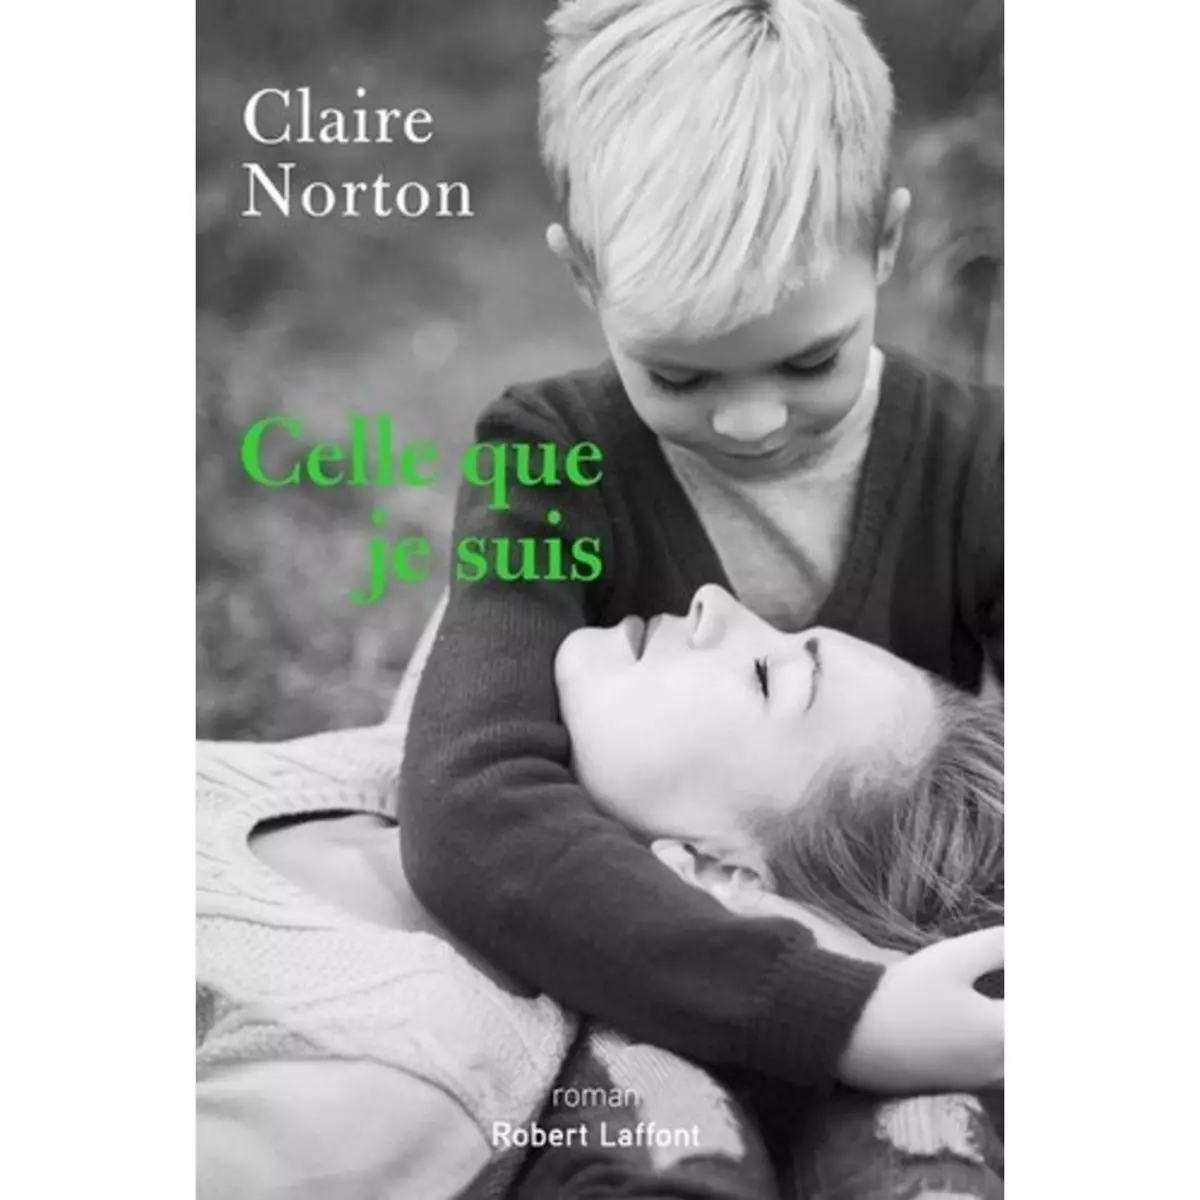  CELLE QUE JE SUIS, Norton Claire